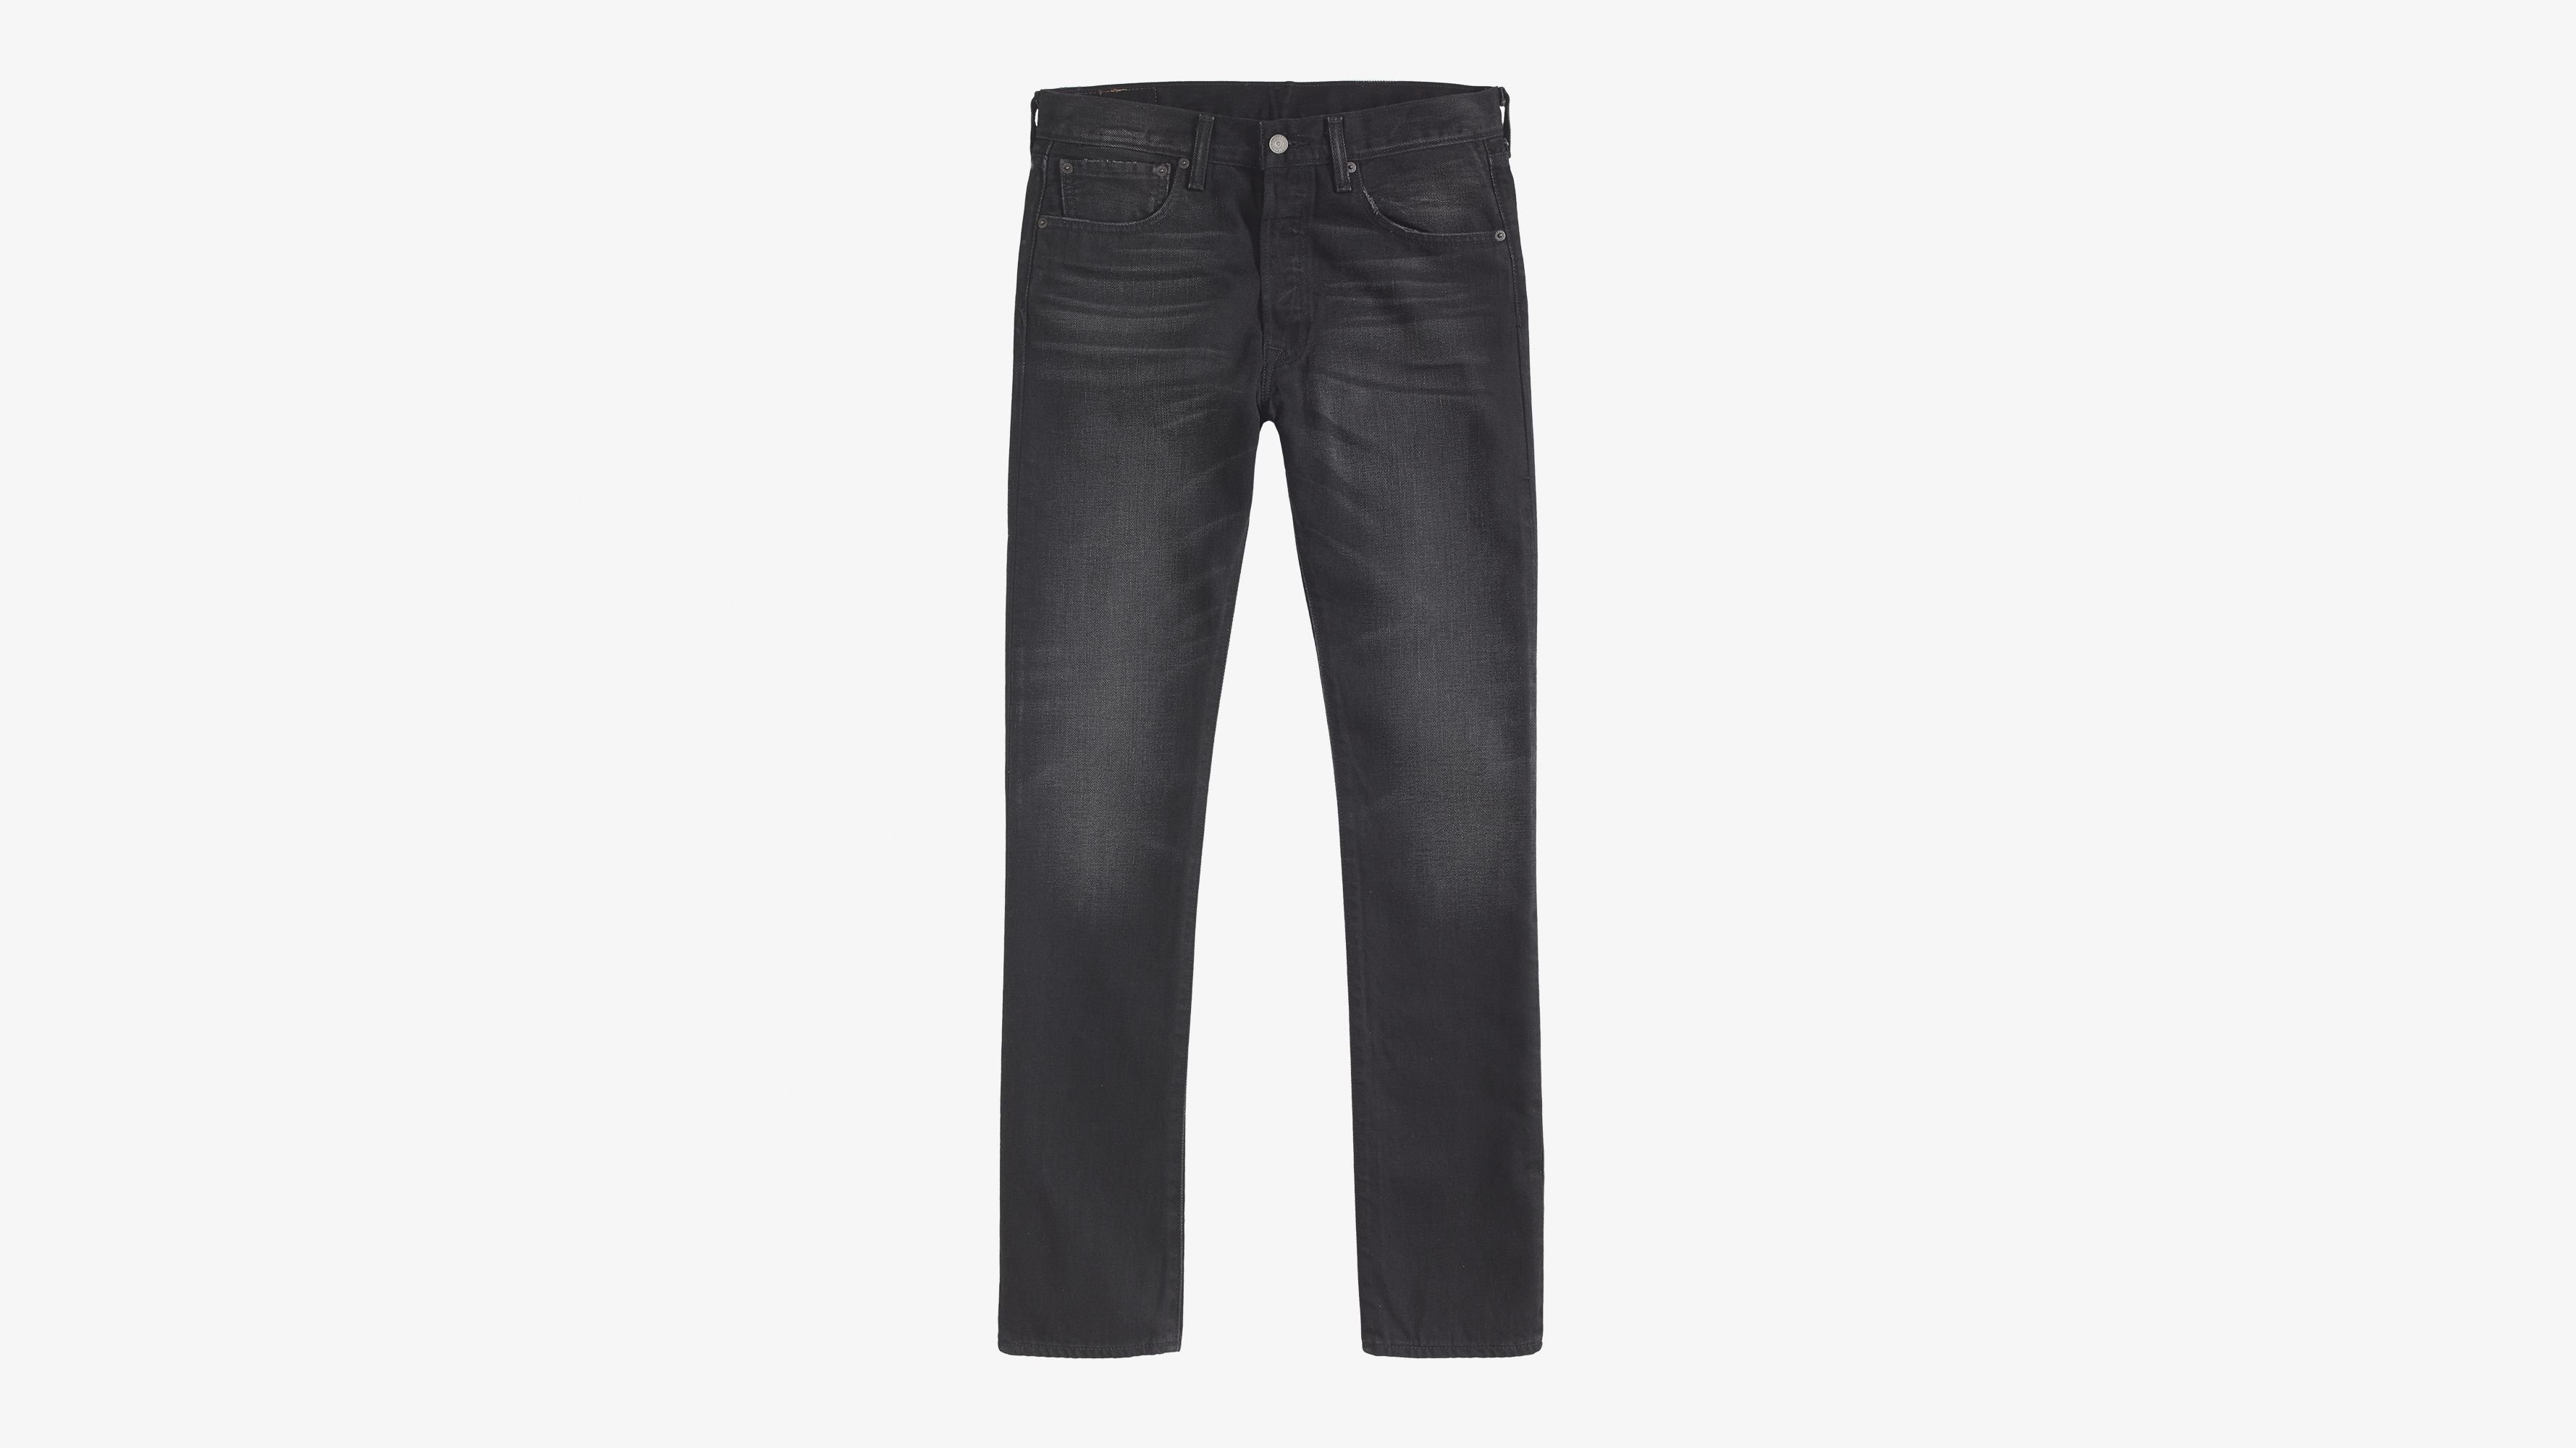 levis 501 mens jeans grey